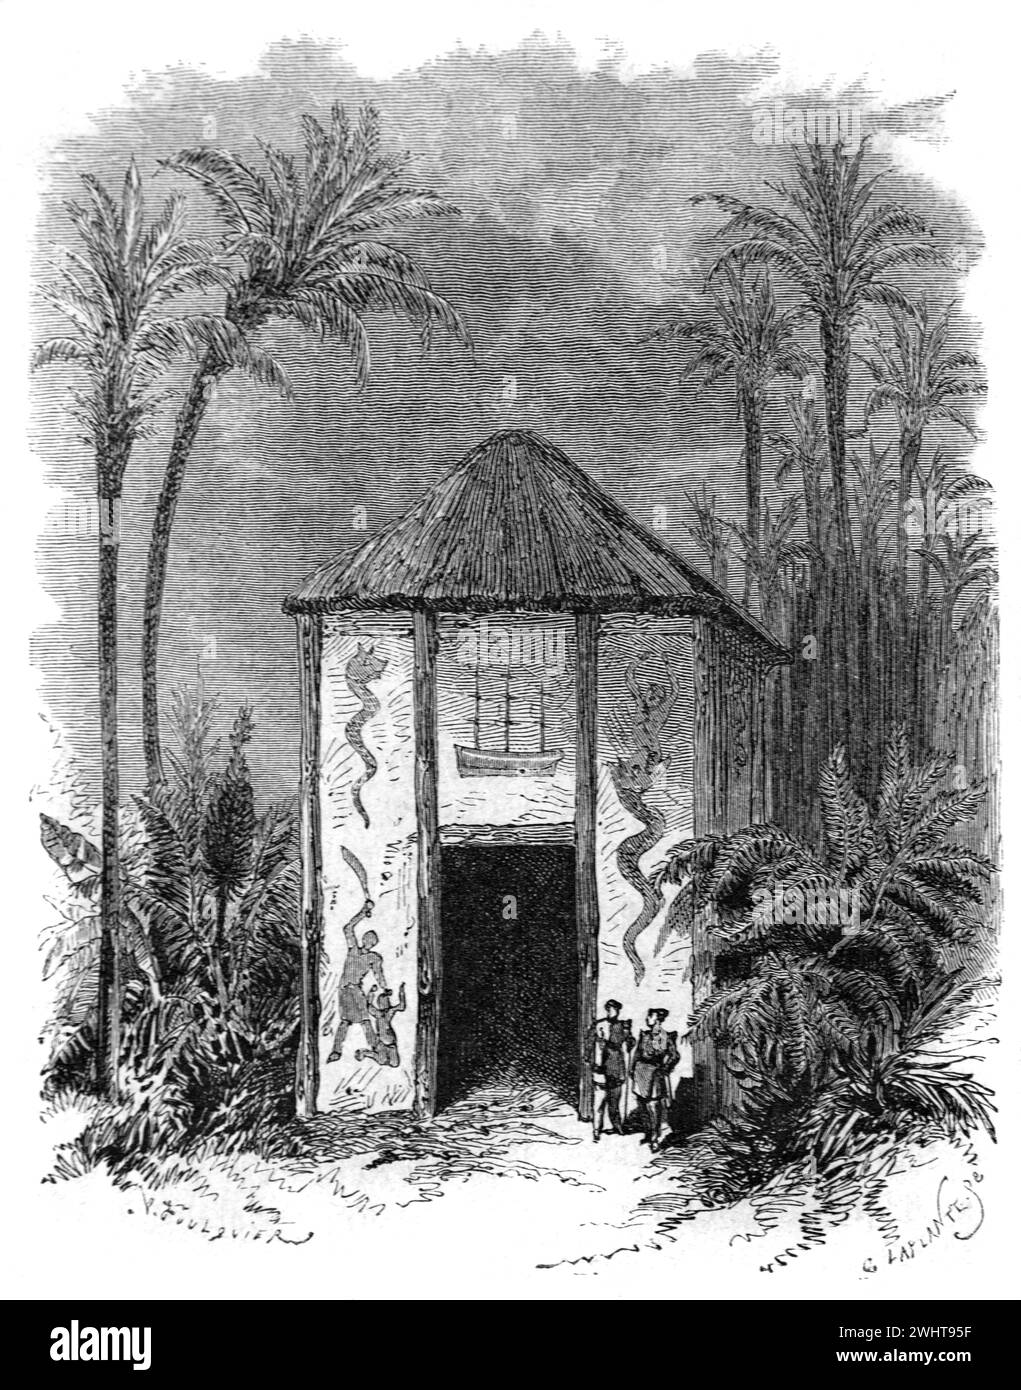 Cabane sacrificielle à Cana, Royaume du Dahomey, aujourd'hui République du Bénin, Afrique de l'Ouest. Gravure vintage ou historique ou illustration 1863 Banque D'Images